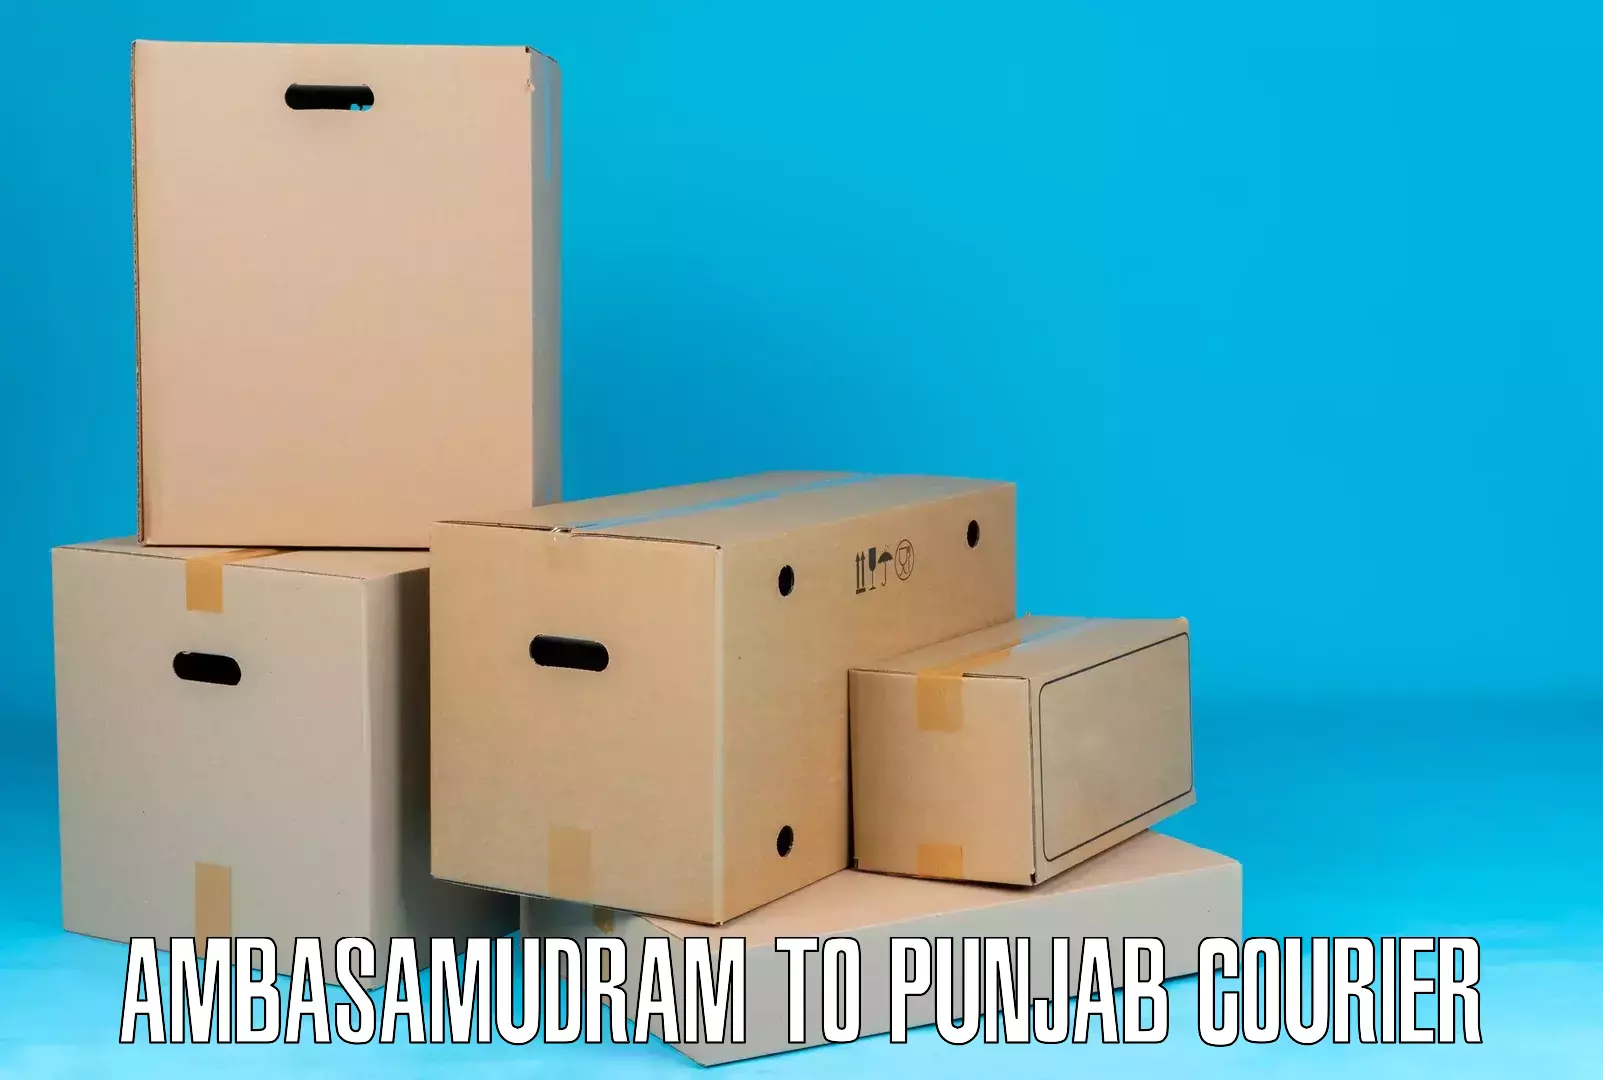 Cargo courier service Ambasamudram to Punjab